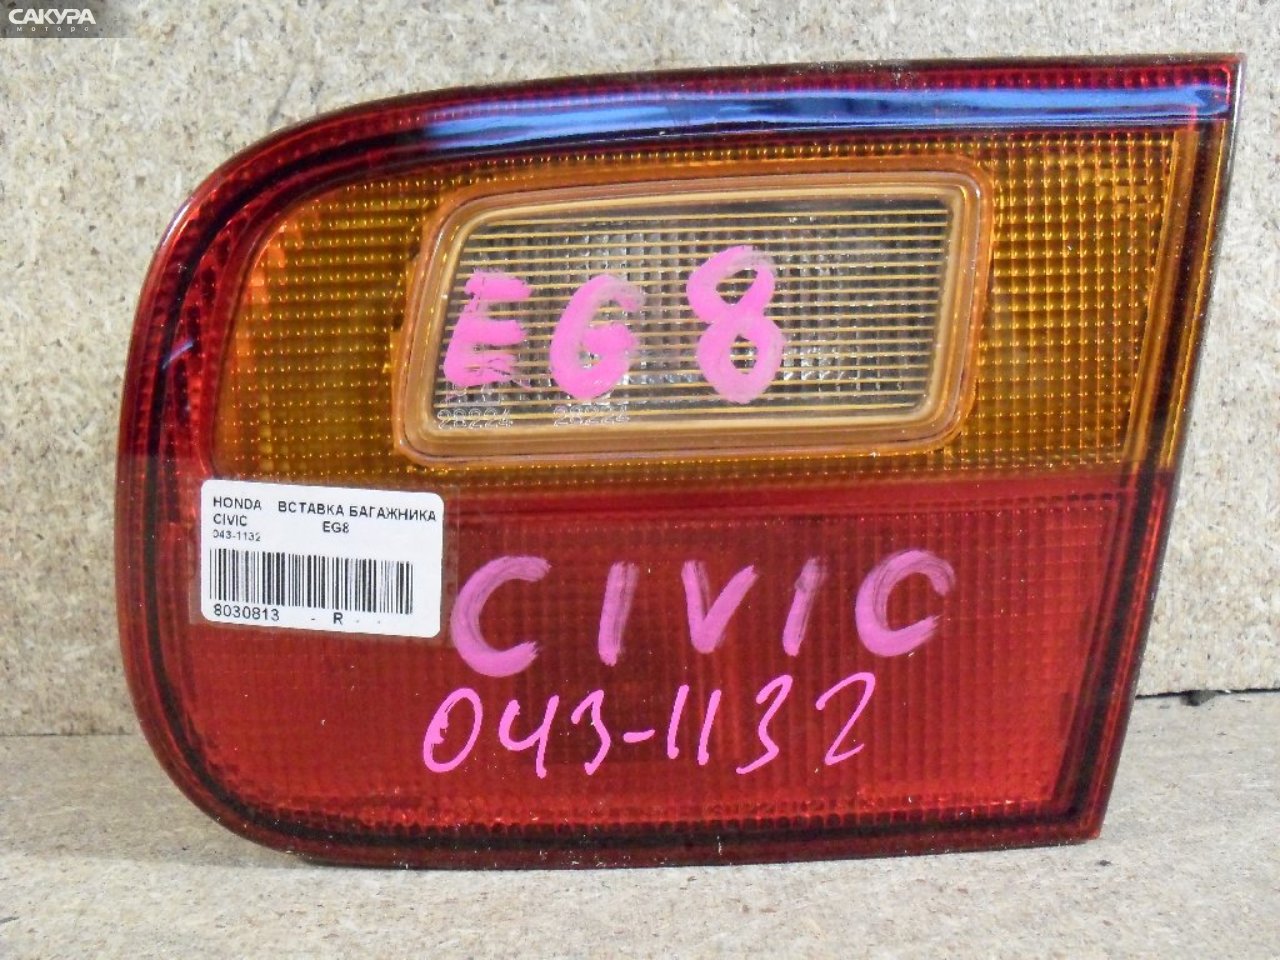 Фонарь вставка багажника правый Honda Civic Ferio EG8 043-1132: купить в Сакура Абакан.